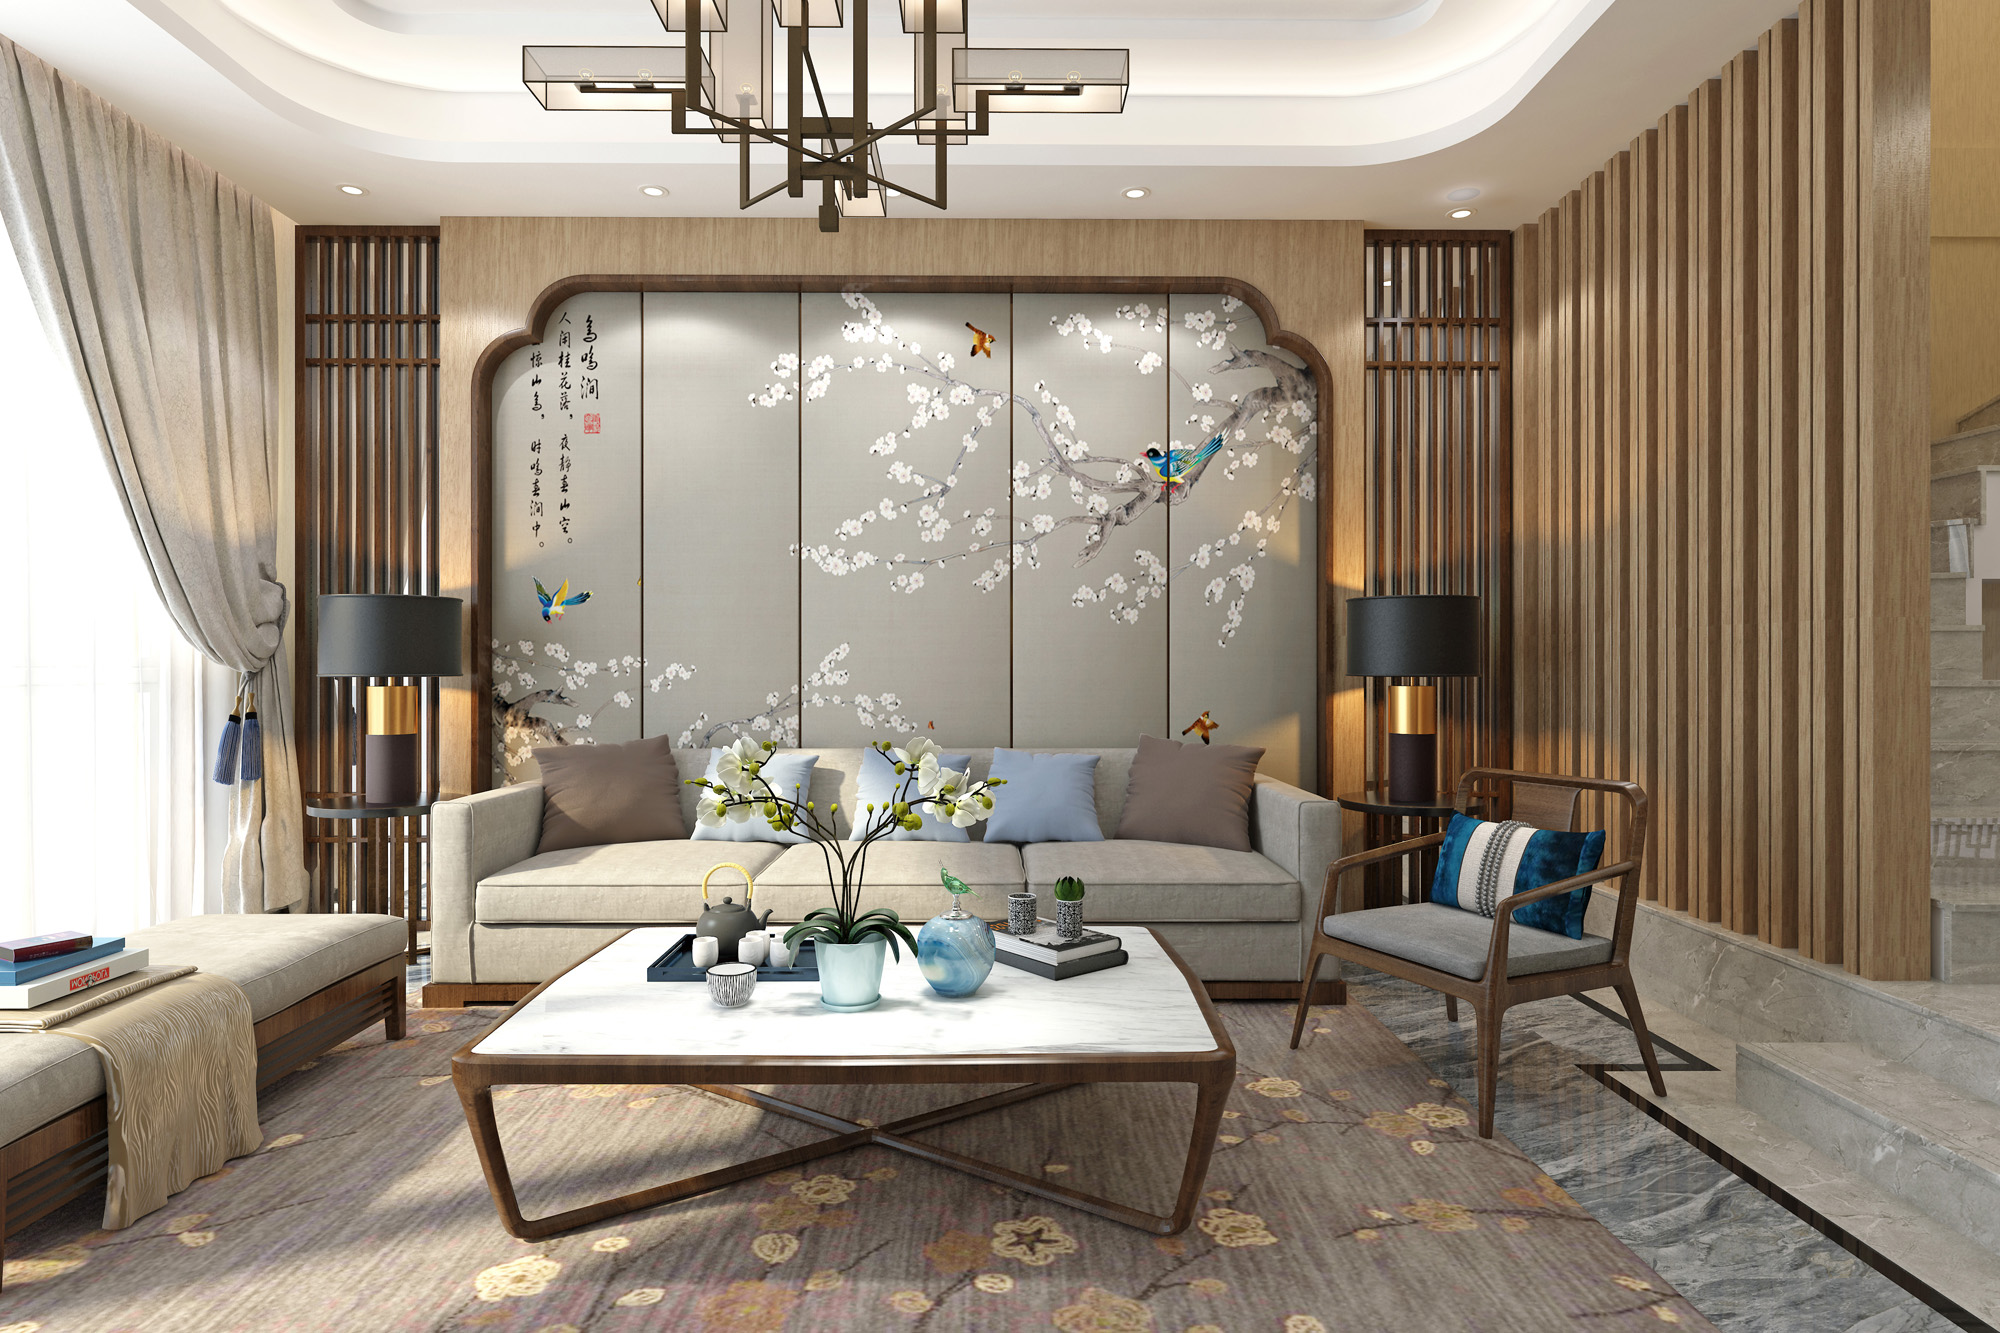 三居 小资 客厅图片来自云南俊雅装饰工程有限公司在中式的分享